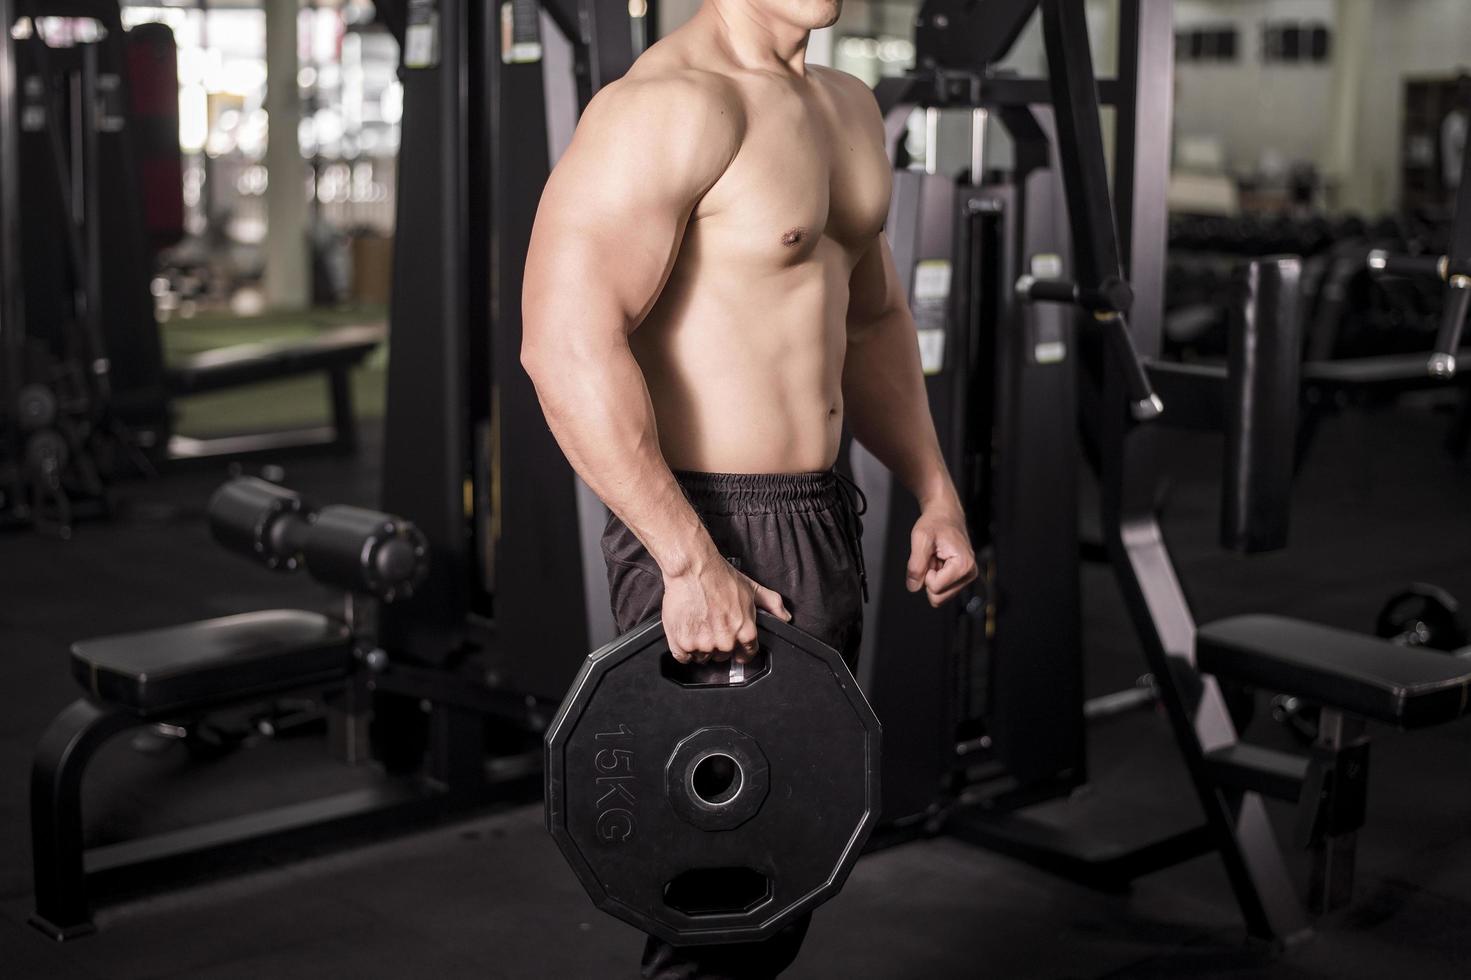 muskulöser Fitness-Mann-Bodybuilder trainiert im Fitnessstudio foto